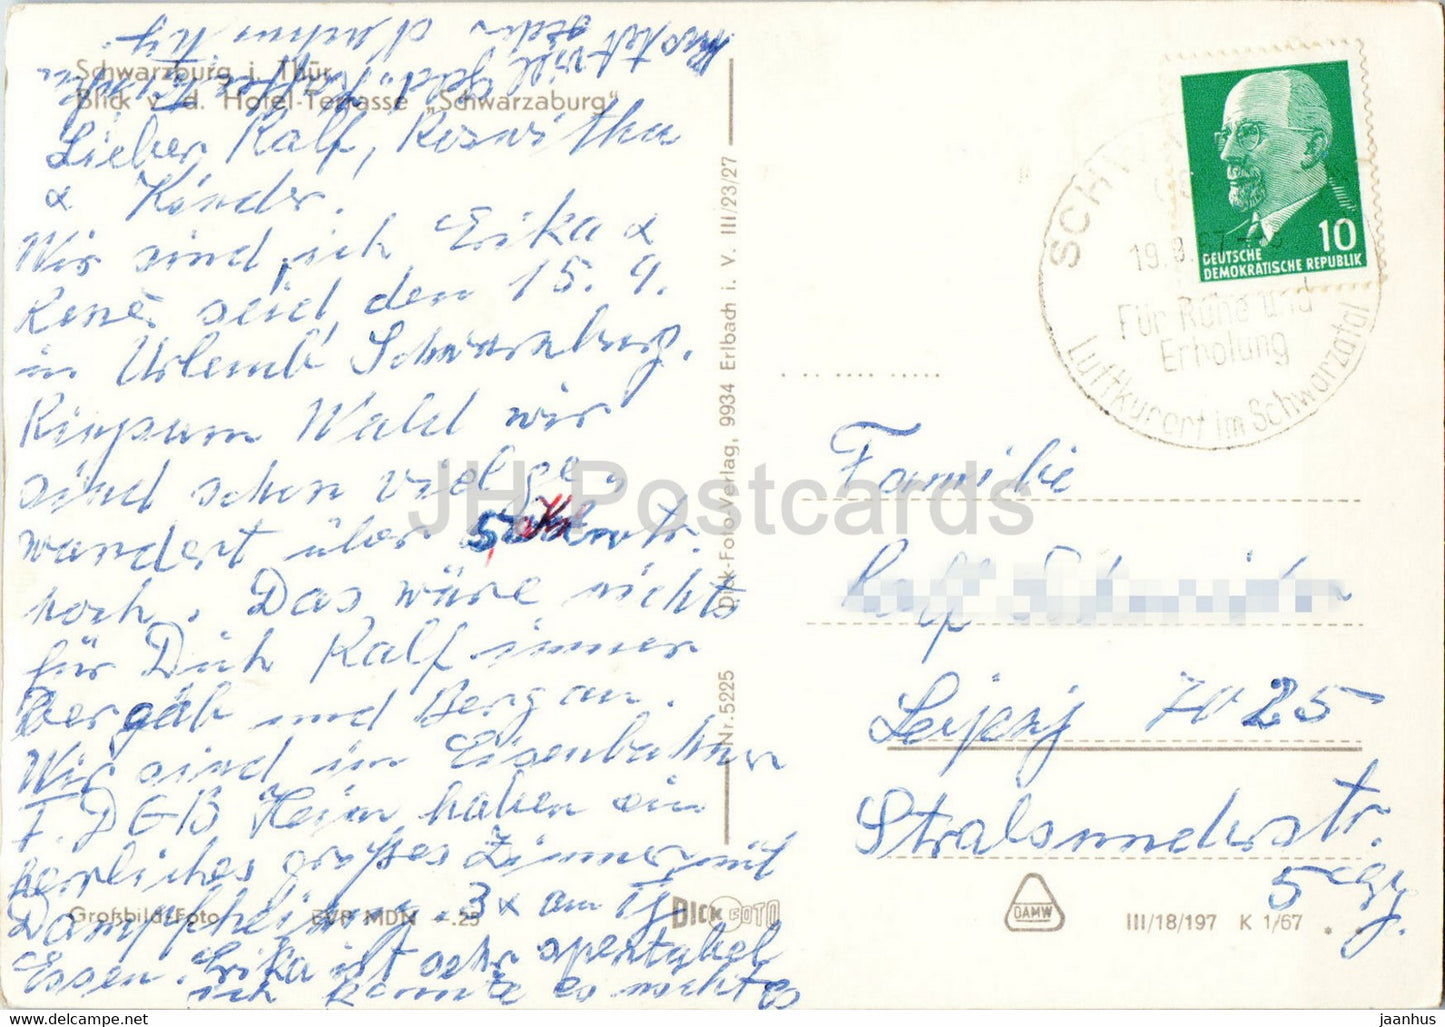 Schwarzburg i Thur - Blick vd Hotel Terrasse Schwarzburg - carte postale ancienne - 1967 - Allemagne DDR - utilisé